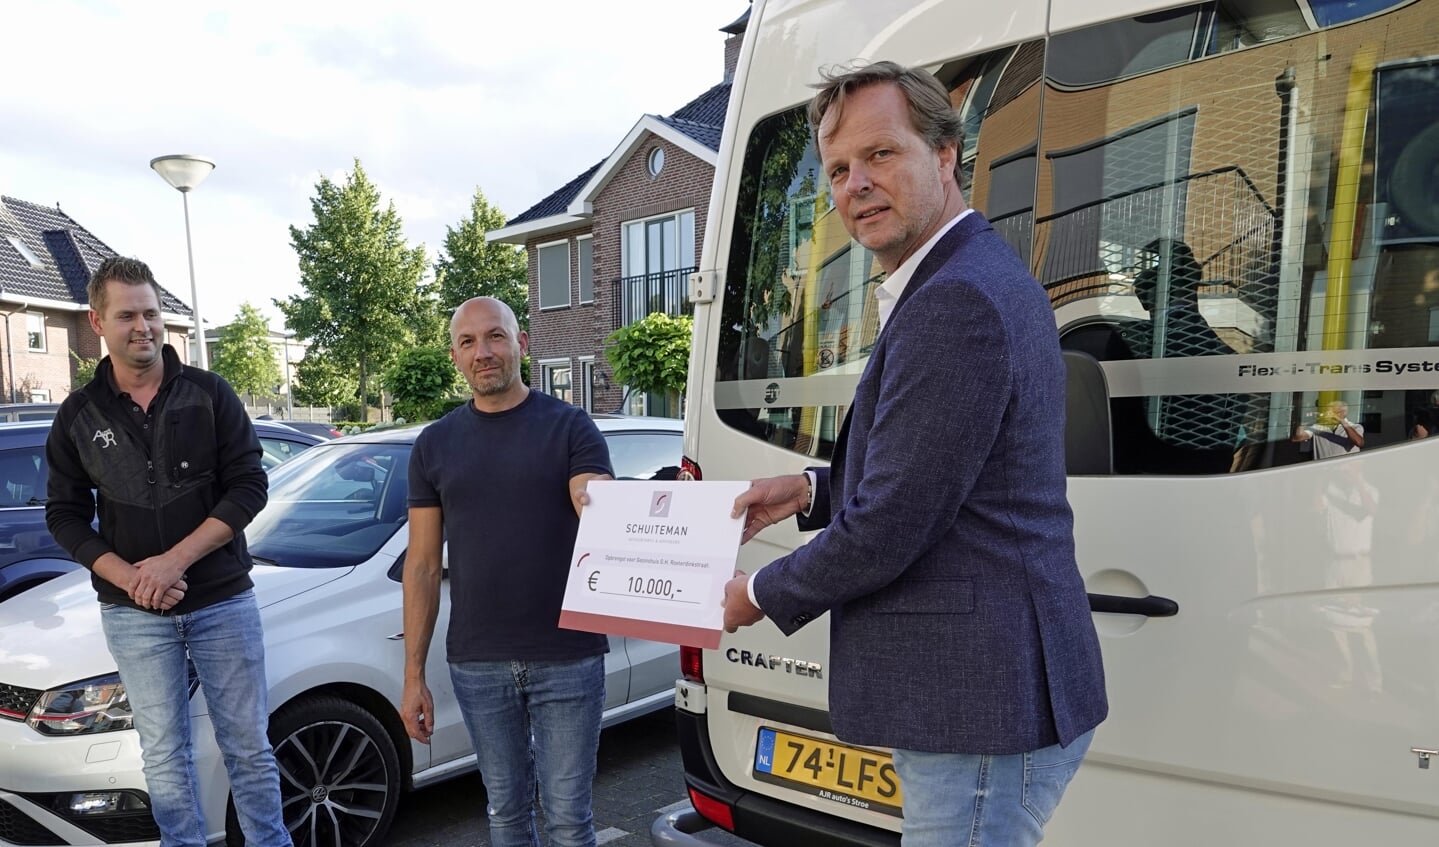 Links Arnoud Ruiter van AJR Auto's in Stroe, die de rolstoelbus heeft geleverd, in het midden gezinsouder Vasile, rechts vice-voorzitter van het Schuiteman Wandelfestijn Voorthuizen Alex van de Kamp, die een cheque van 10.000 euro overhandigt.